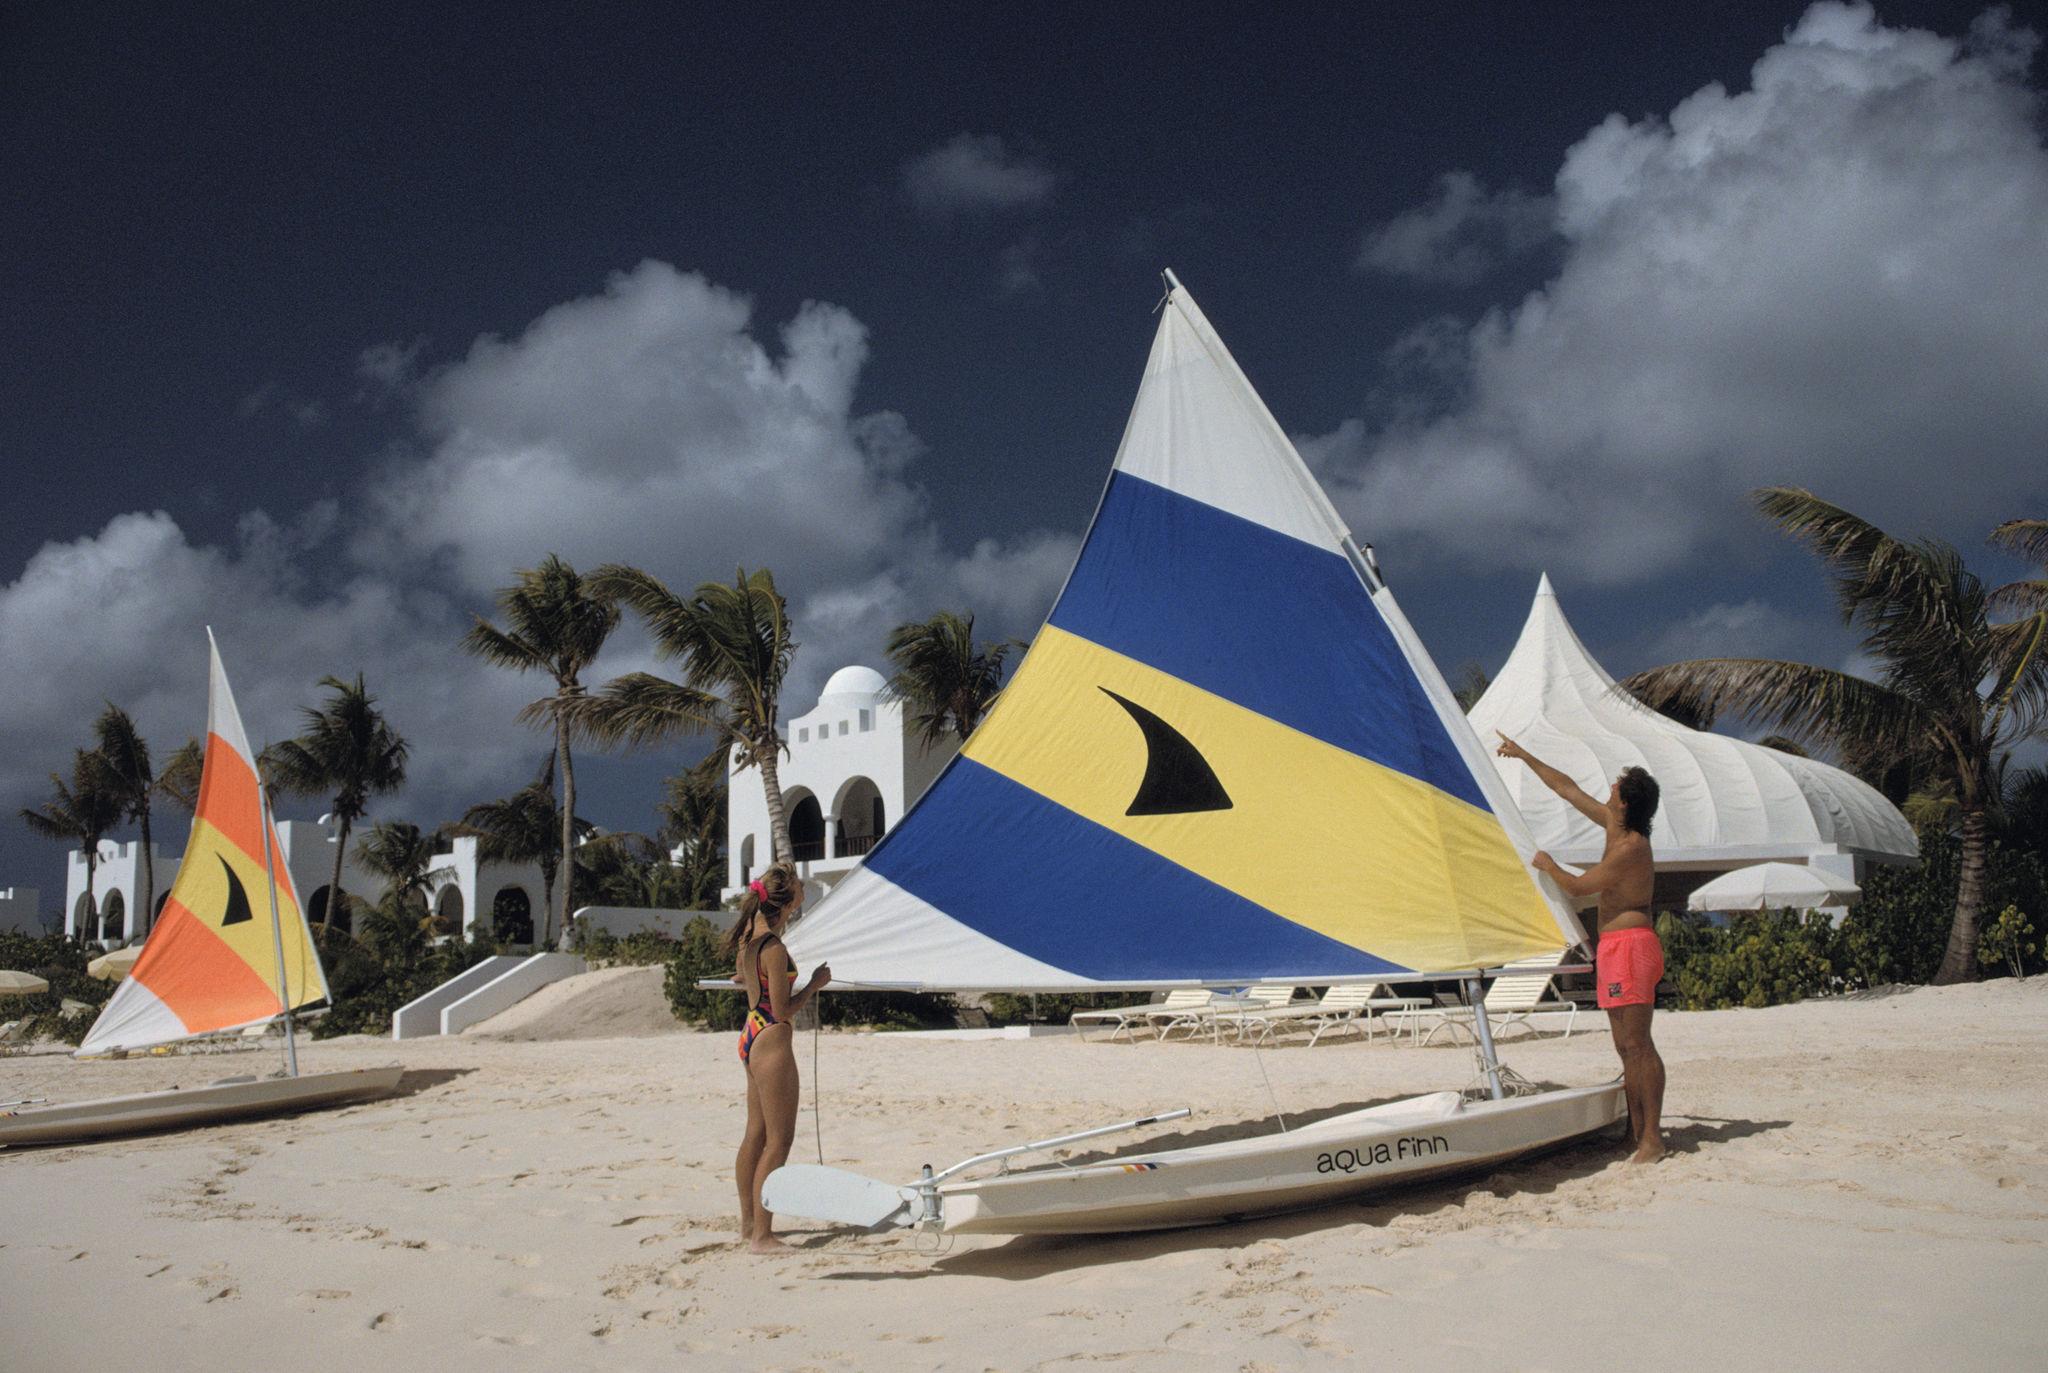 segeln in Anguilla' 1992 Slim Aarons Limitierte Nachlassausgabe Druck 

Ein Ehepaar richtet das Segel seines Beibootes in einem Luxusresort auf der Insel Anguilla in den Westindischen Inseln, Januar 1992. 

Hergestellt aus der